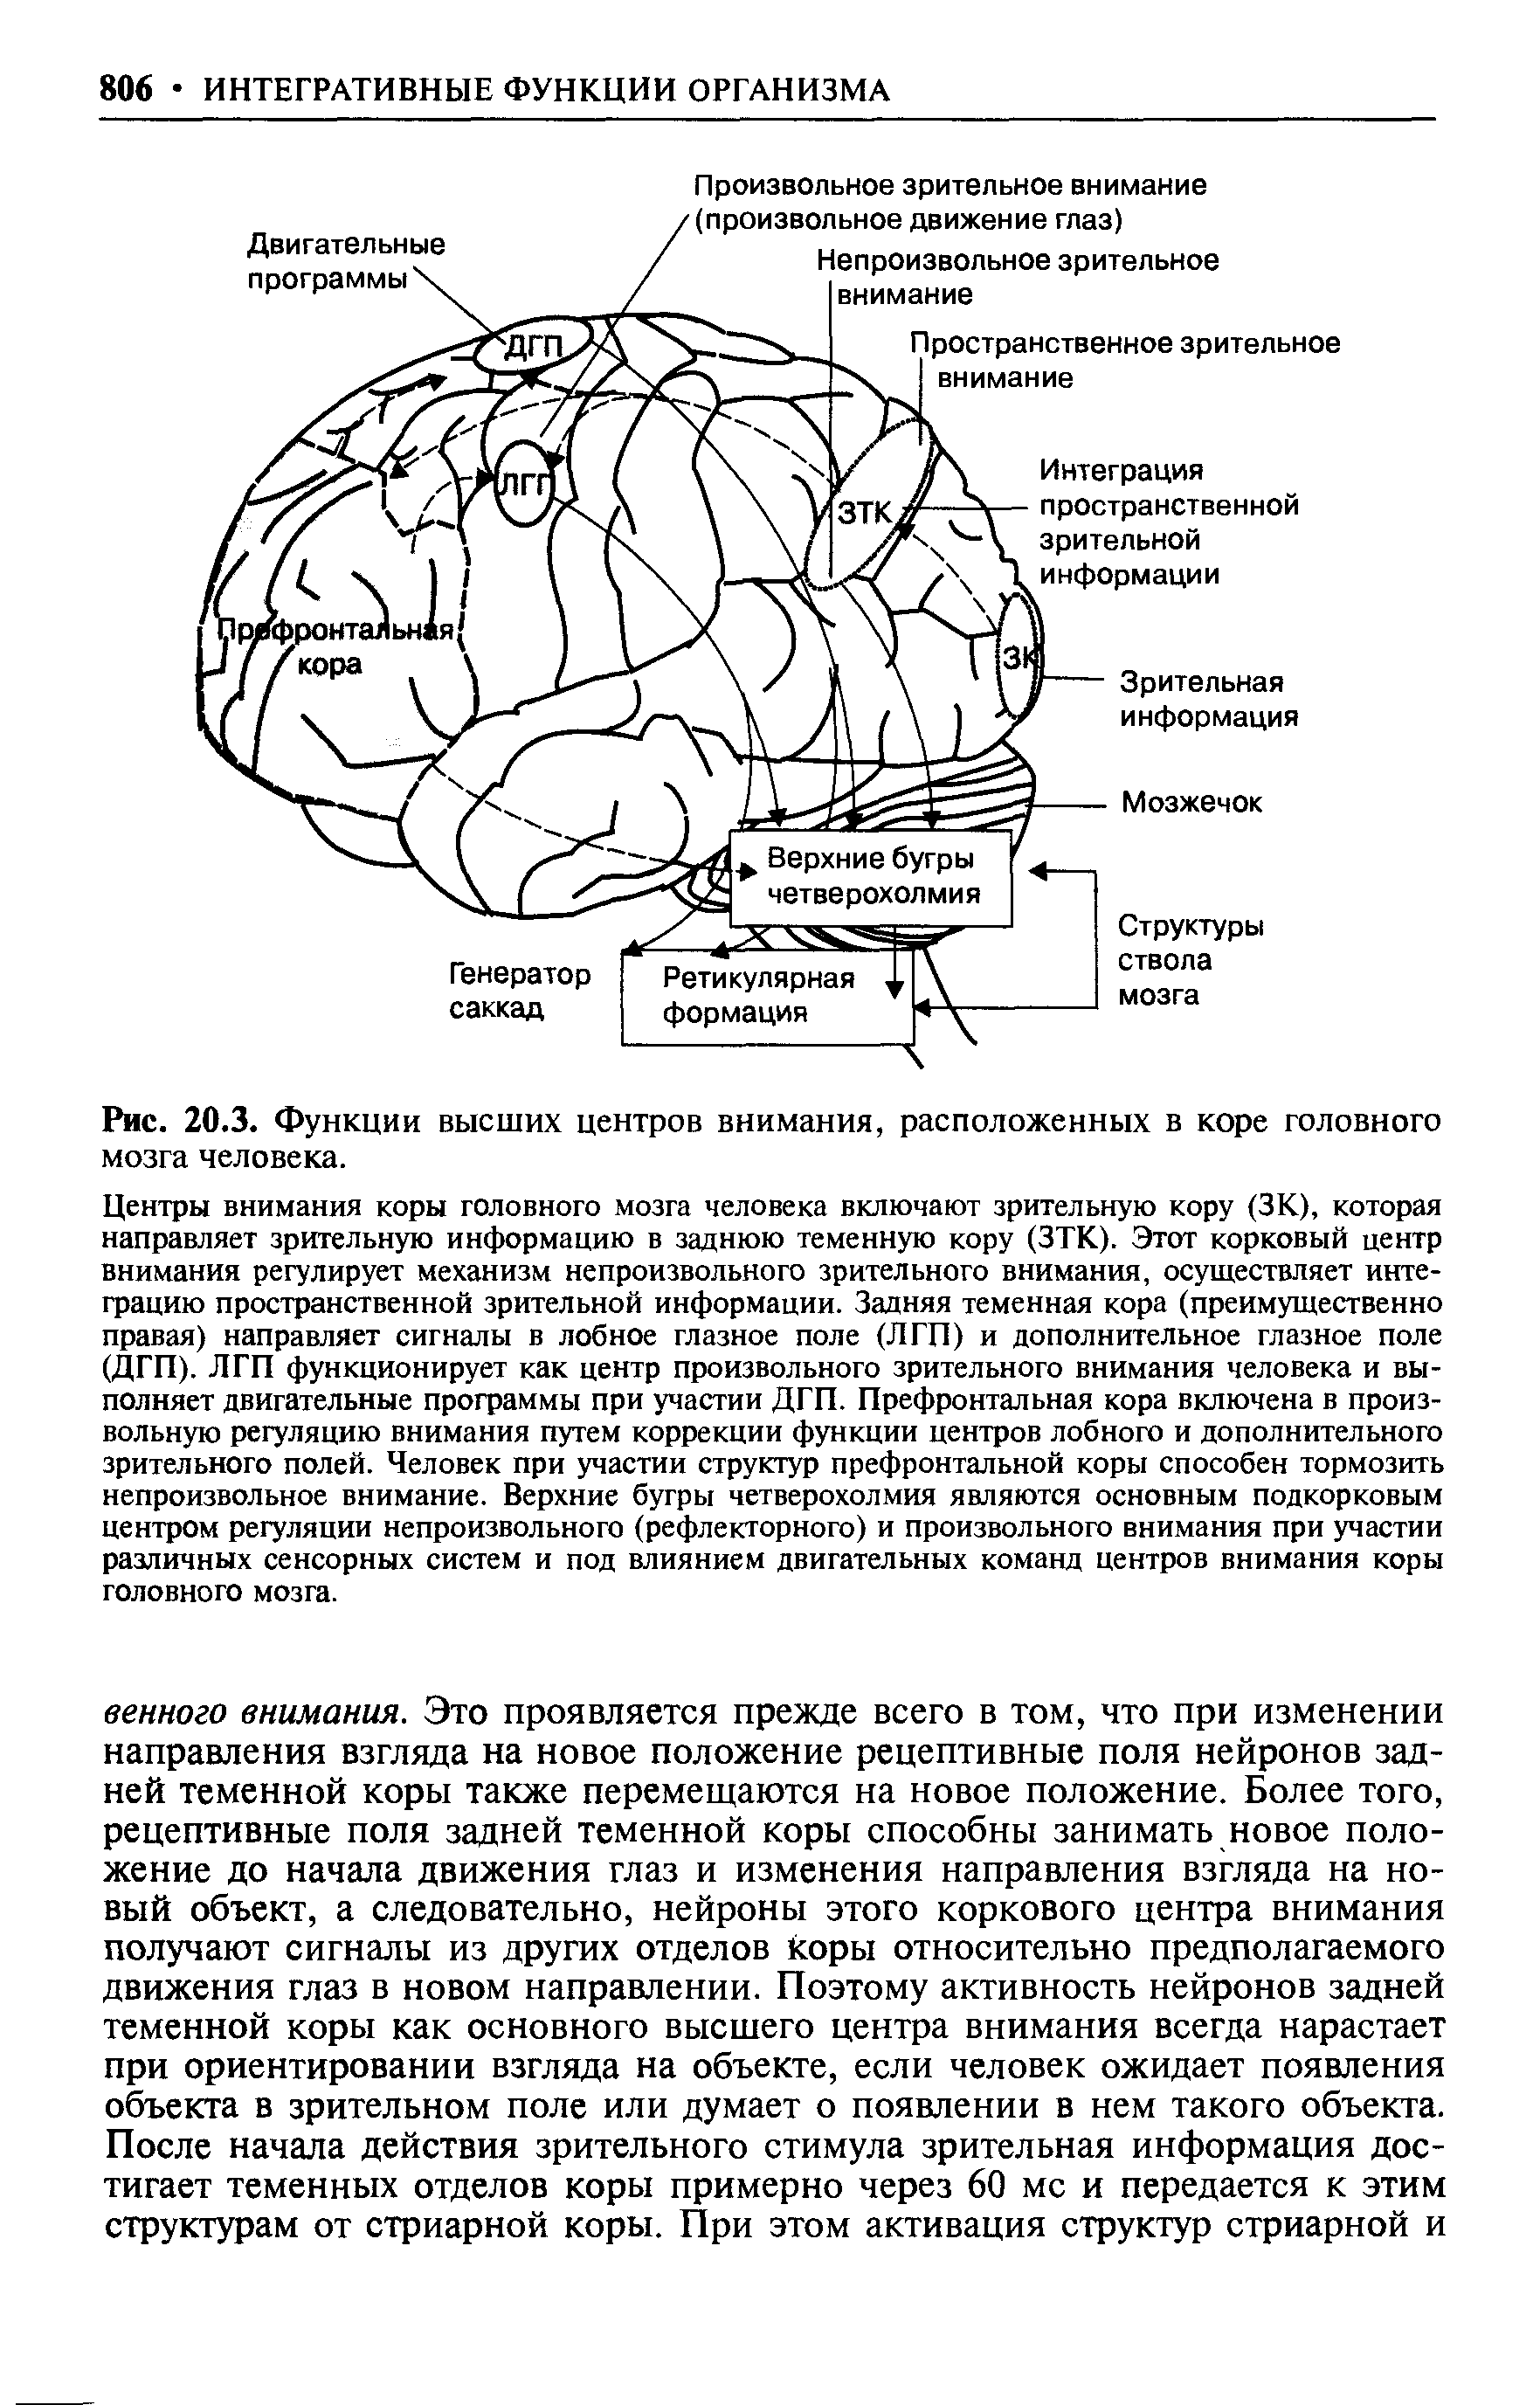 Рис. 20.3. Функции высших центров внимания, расположенных в коре головного мозга человека.